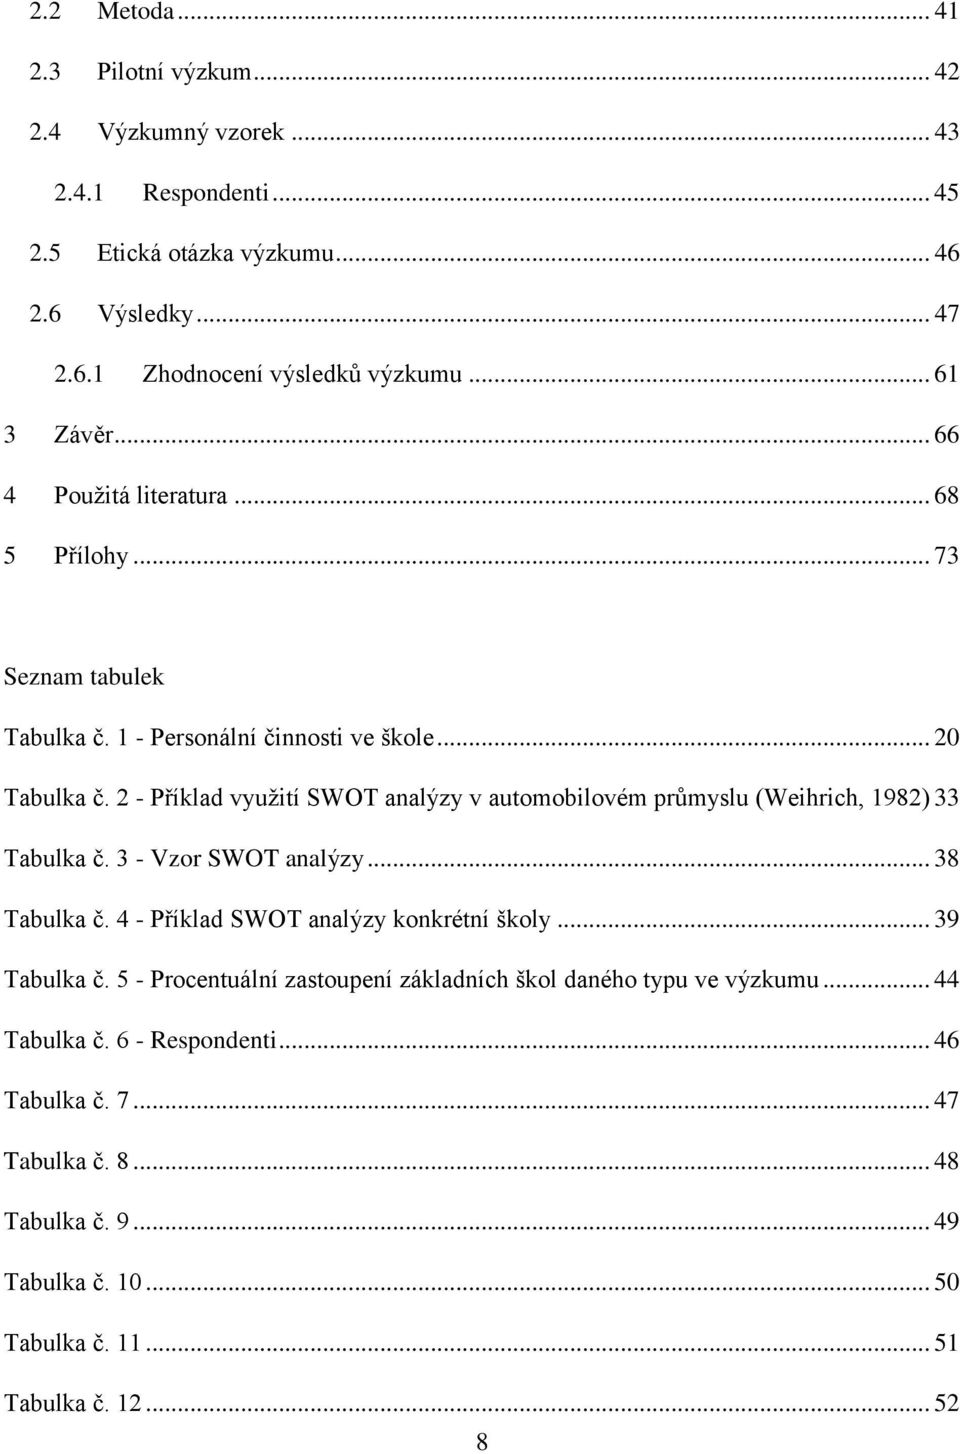 2 - Příklad využití SWOT analýzy v automobilovém průmyslu (Weihrich, 1982) 33 Tabulka č. 3 - Vzor SWOT analýzy... 38 Tabulka č. 4 - Příklad SWOT analýzy konkrétní školy.